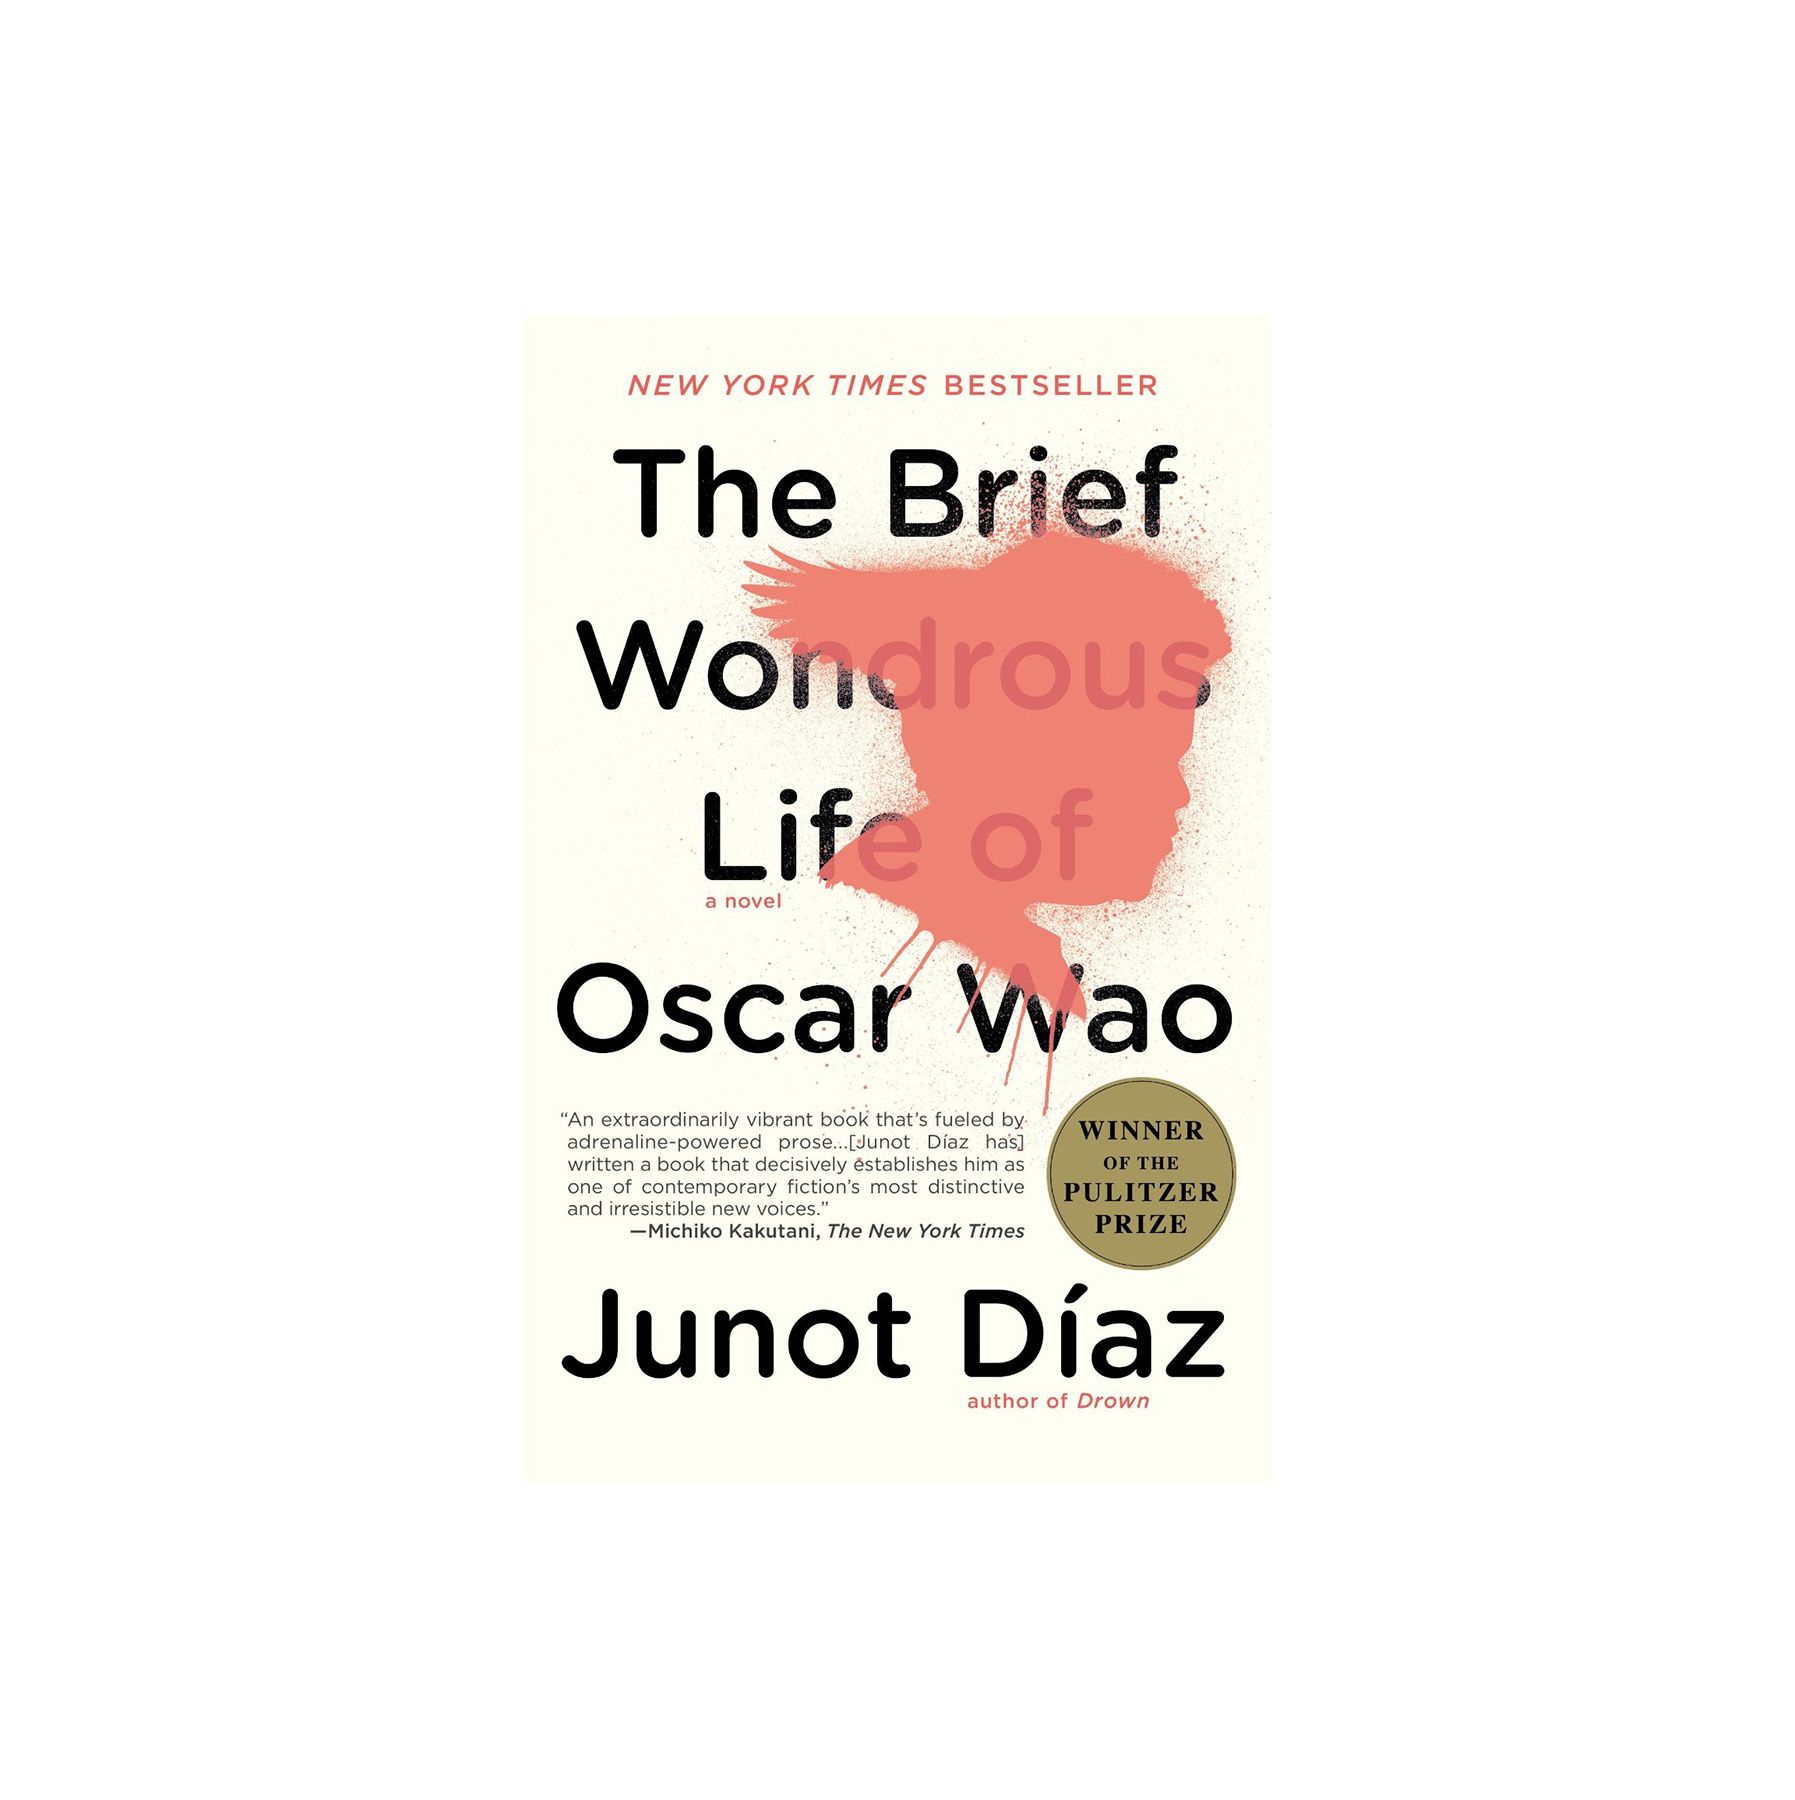 La breve y maravillosa vida de Oscar Wao, de Junot Diaz